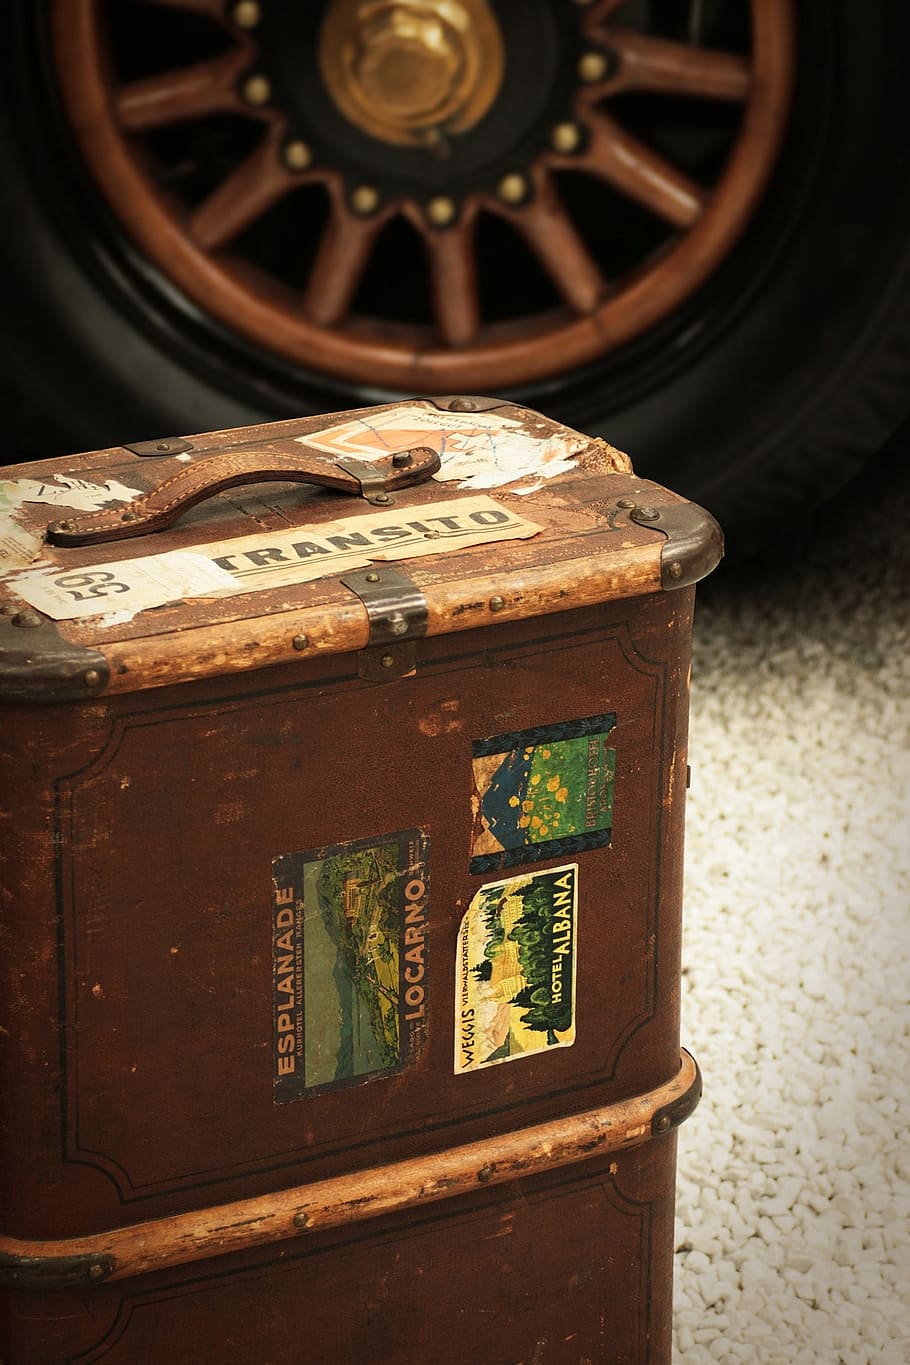 equipaje, viaje, retro, rueda, auto, madera, marrón, pegatina, rueda de carreta, españa